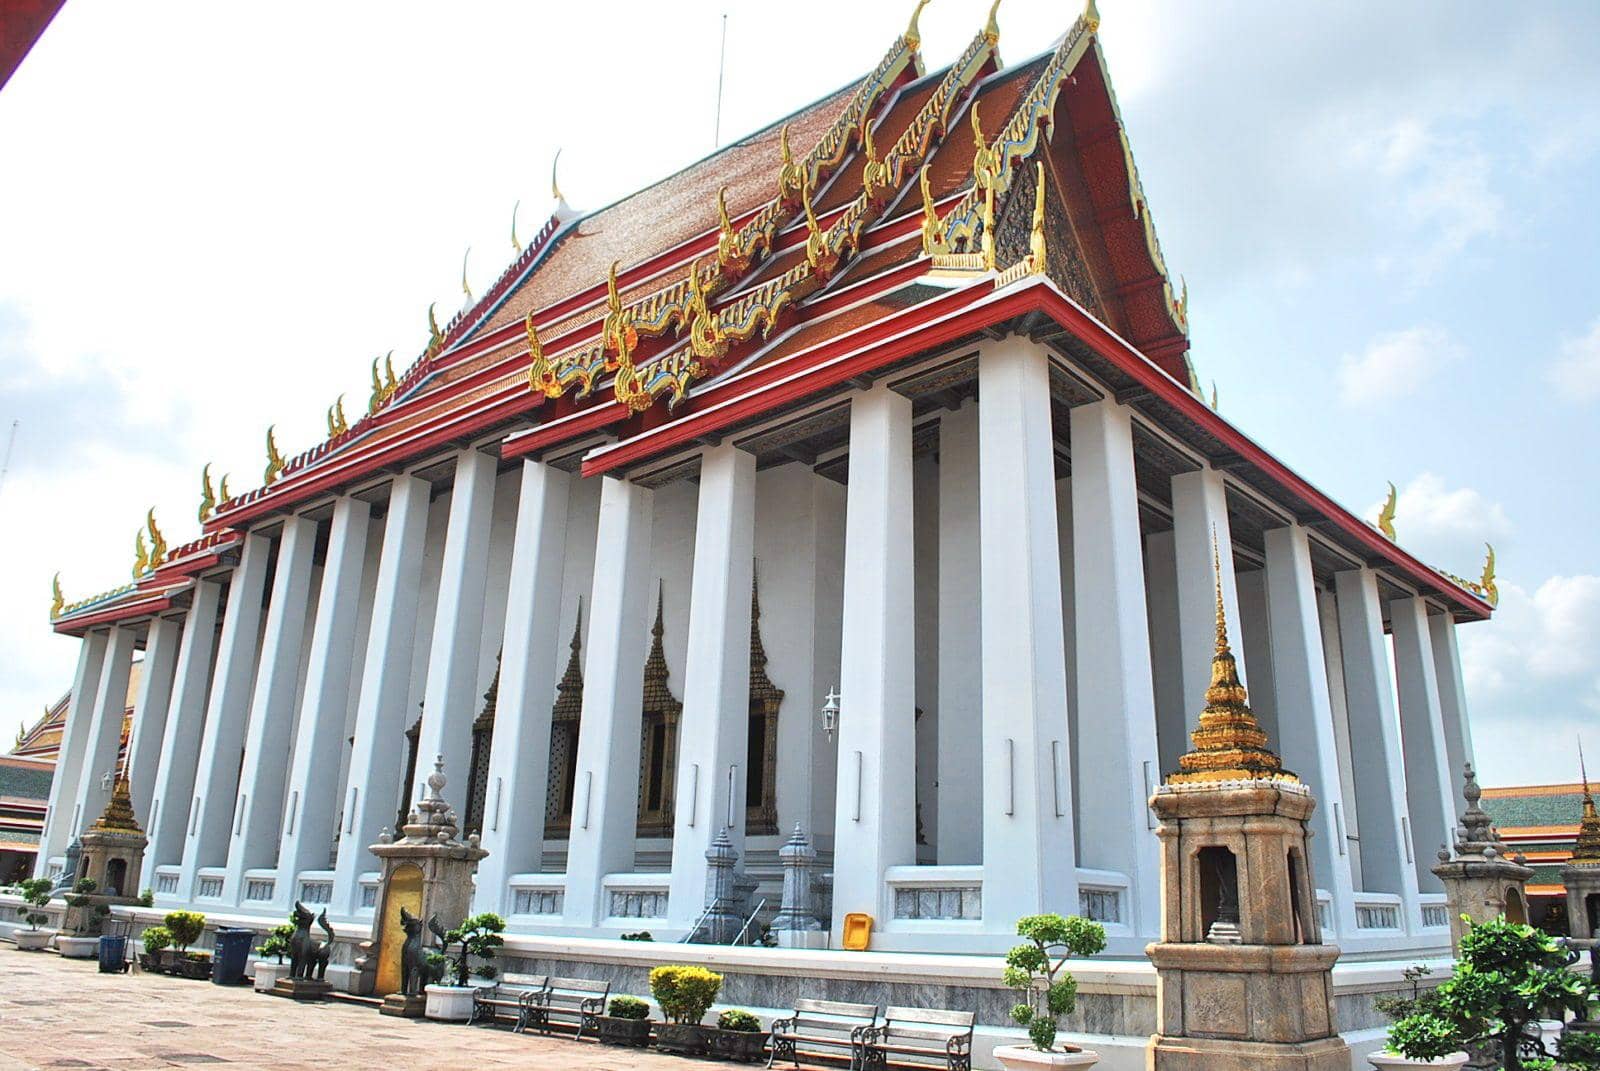 Ubosot Wat Pho